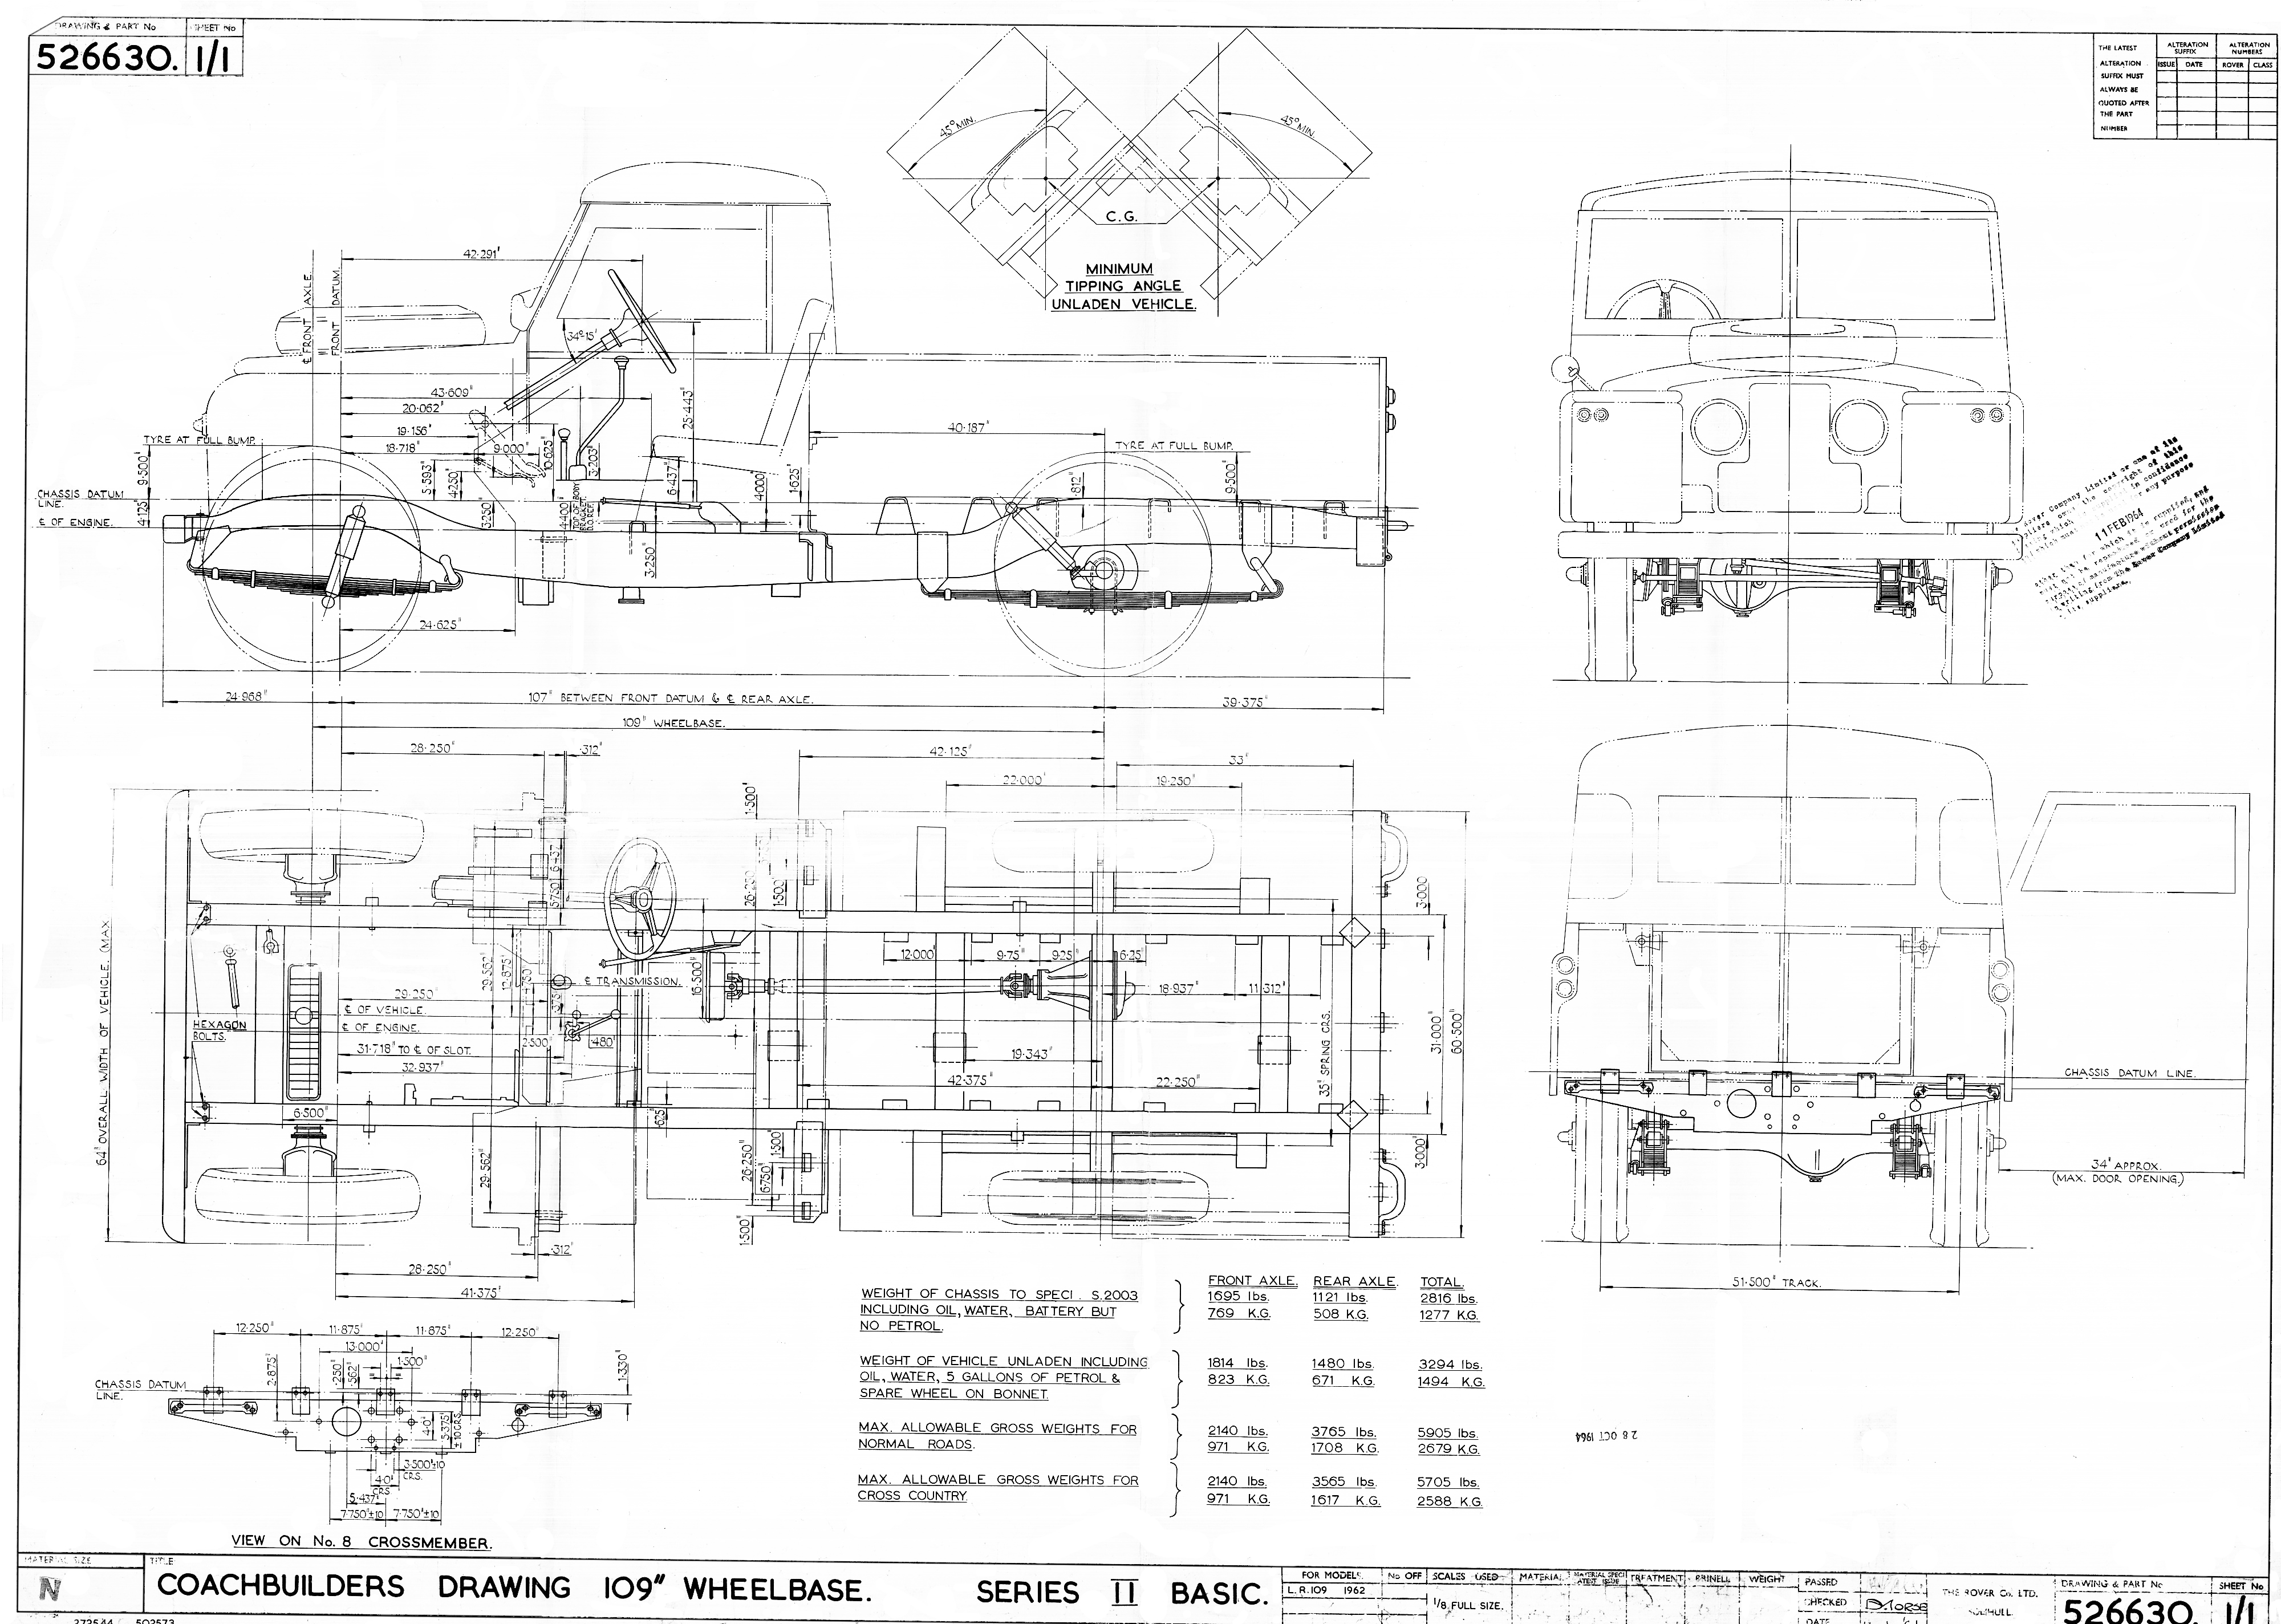 Land Rover 109 blueprint